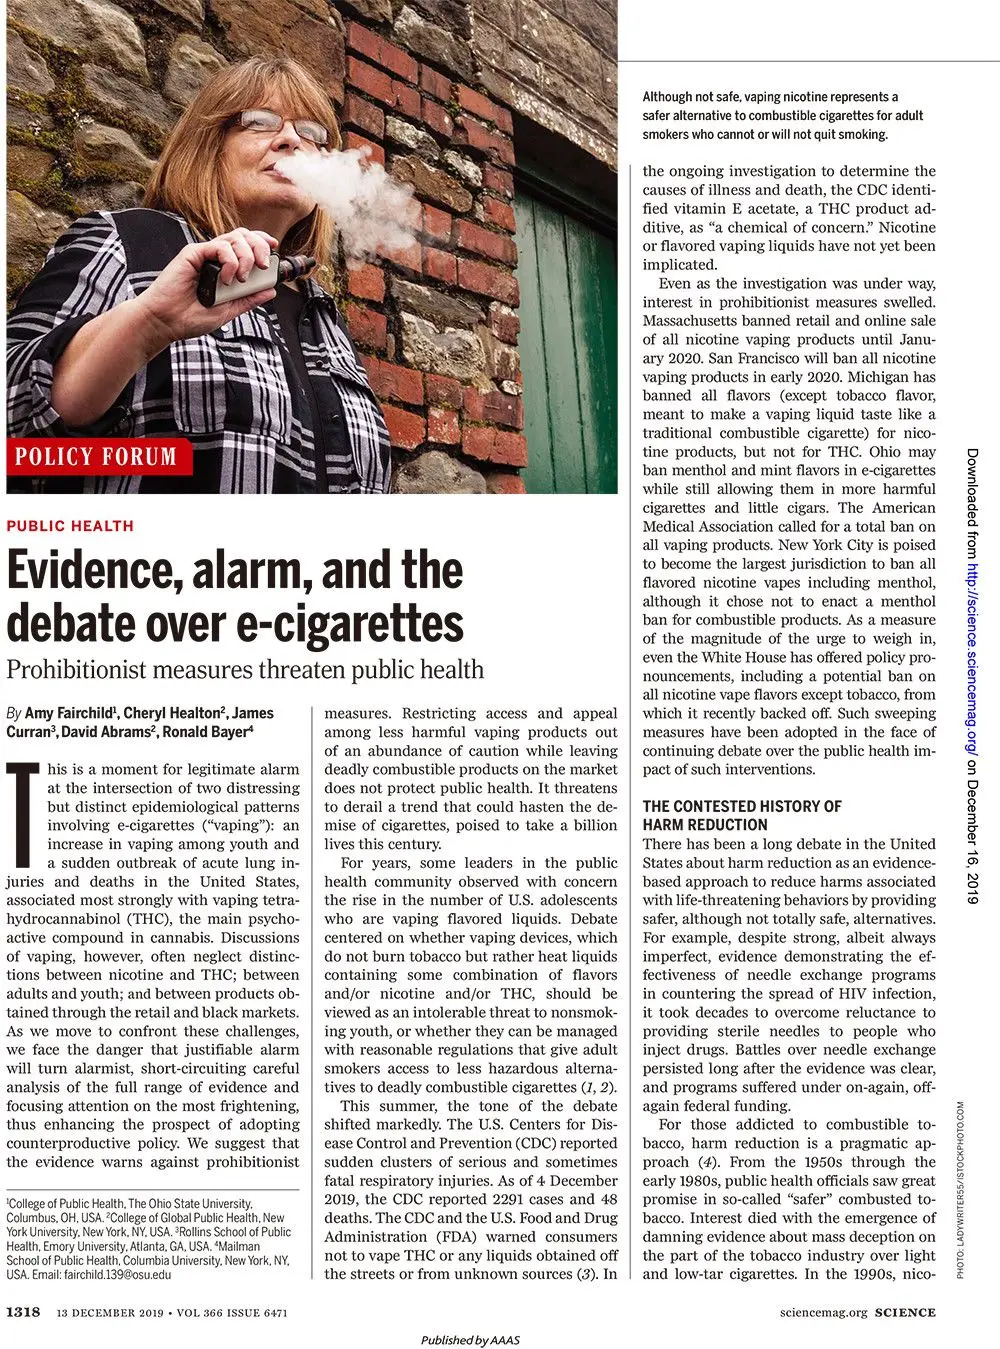 权威学术期刊《科学》杂志为电子烟正名：电子烟相对烟草更安全！